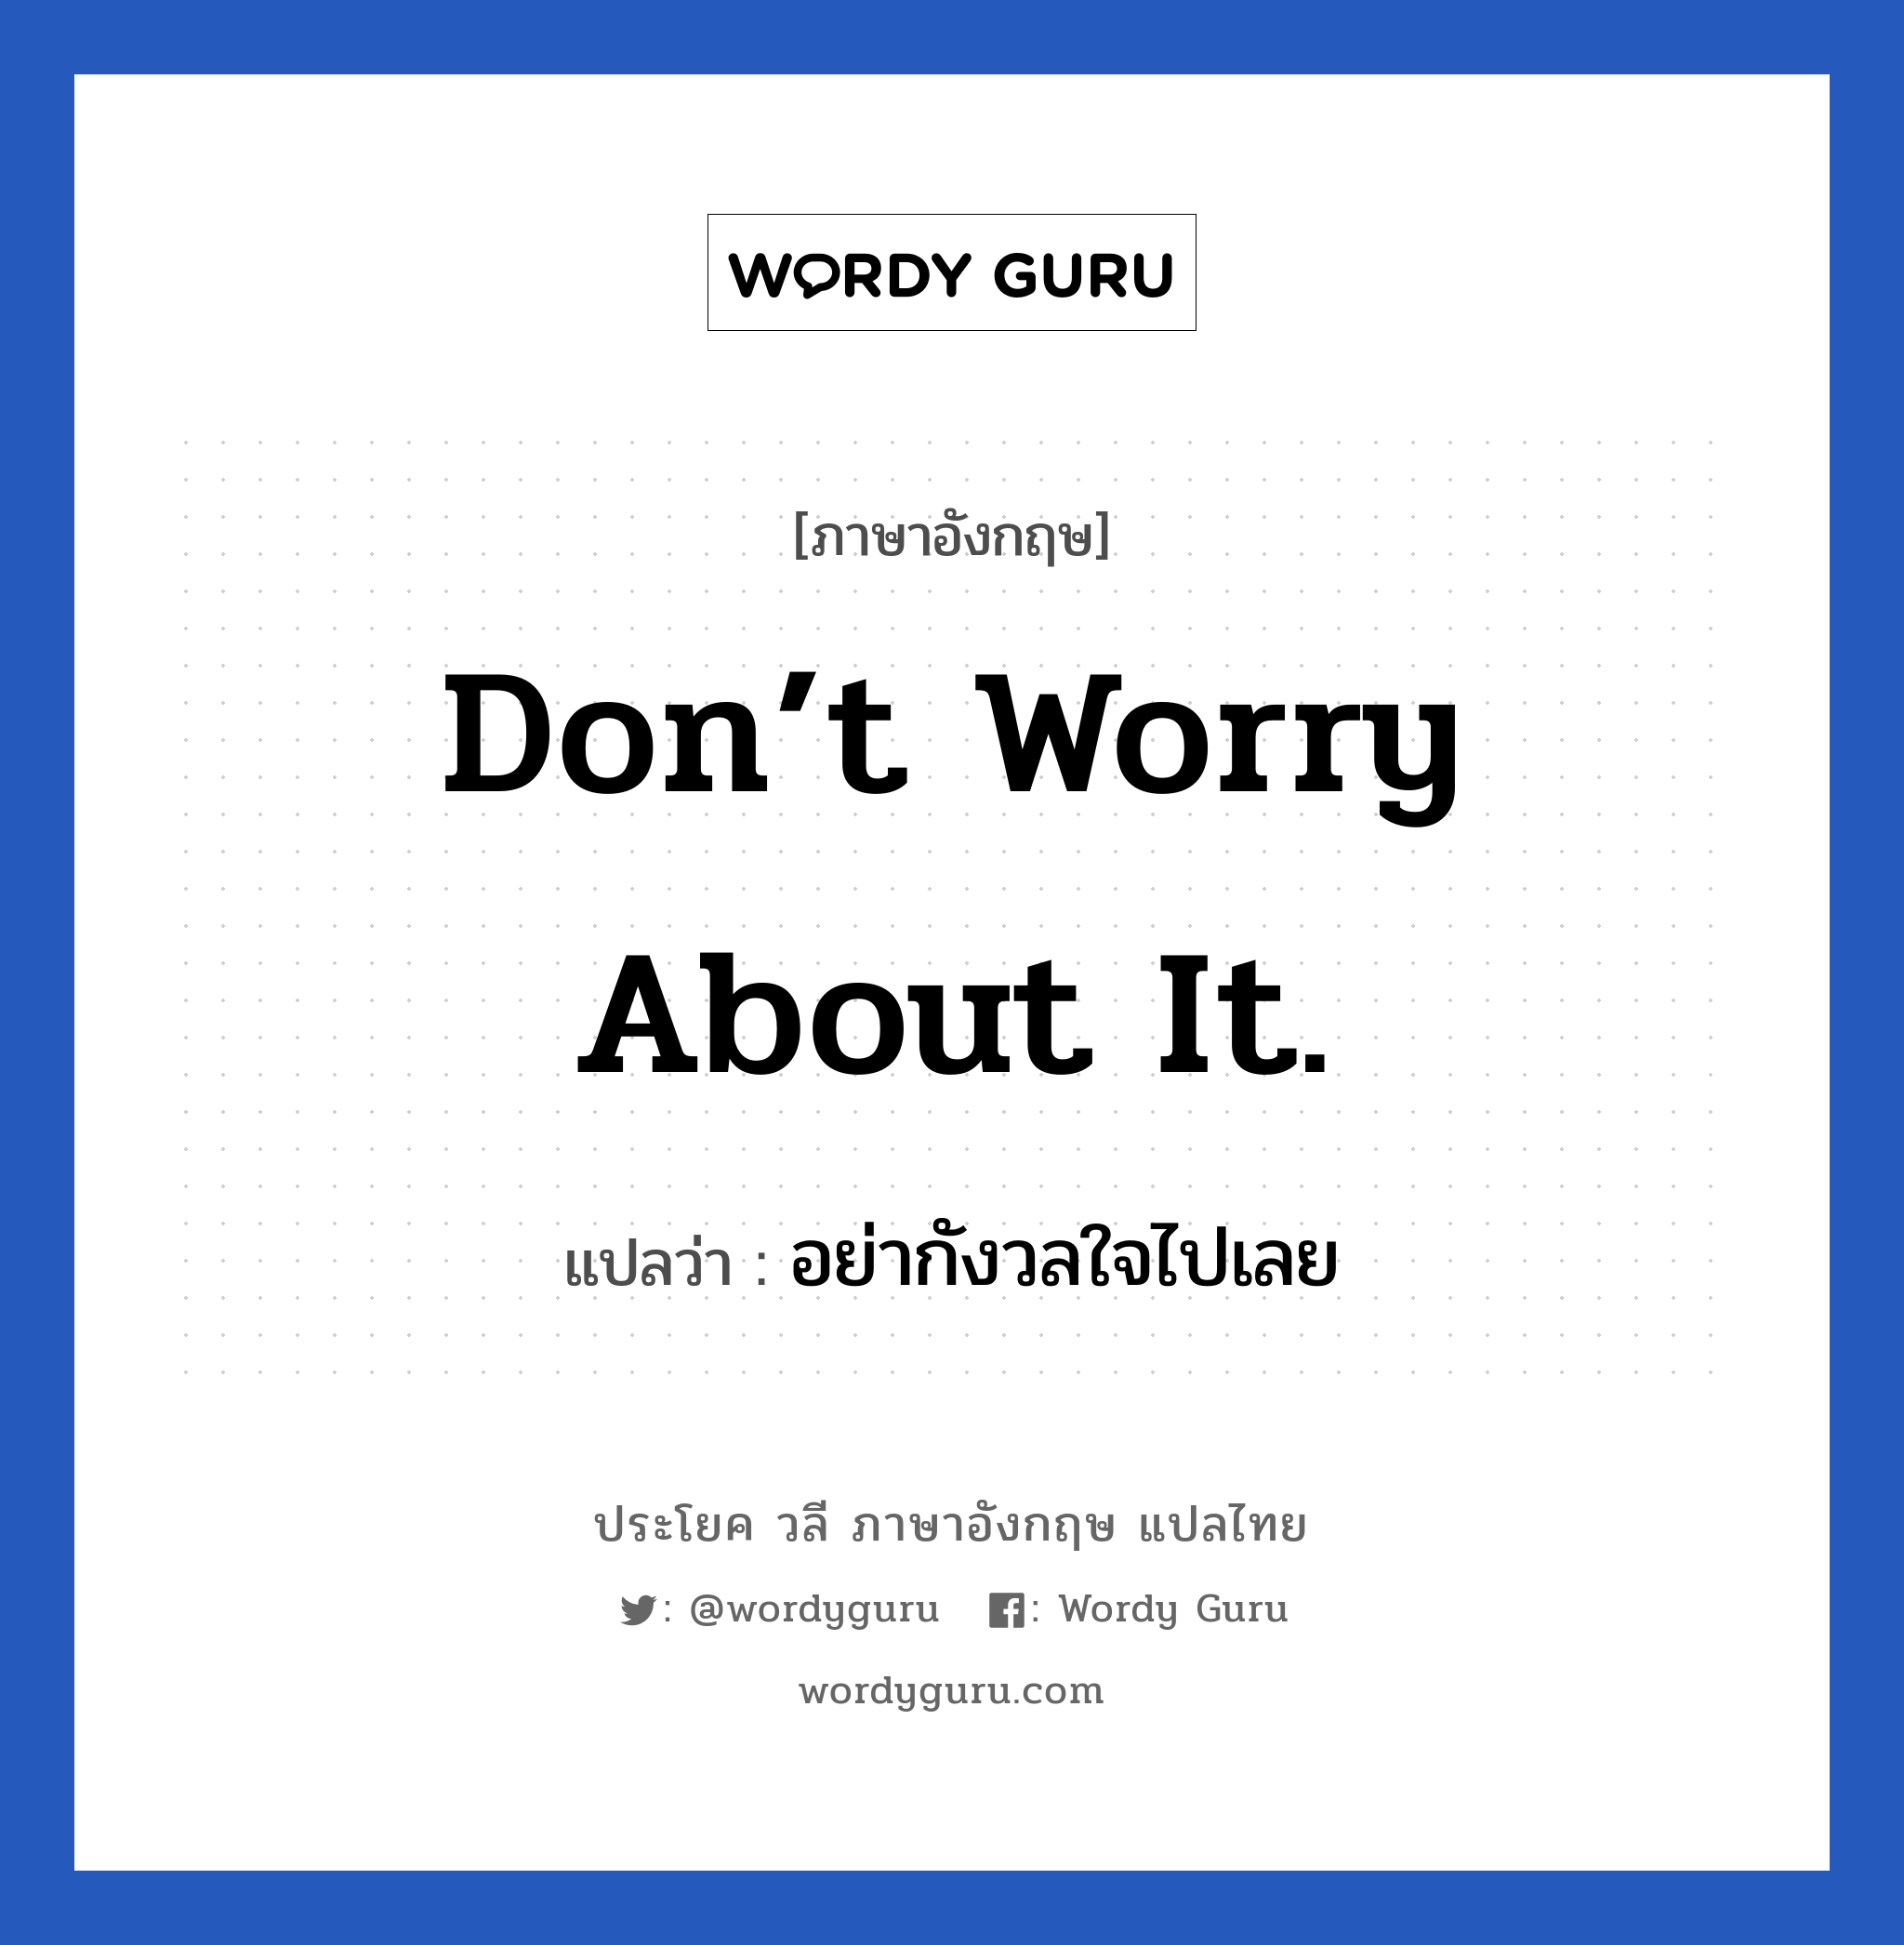 Don’t worry about it! แปลว่า?, วลีภาษาอังกฤษ Don’t worry about it. แปลว่า อย่ากังวลใจไปเลย หมวด ให้กำลังใจ